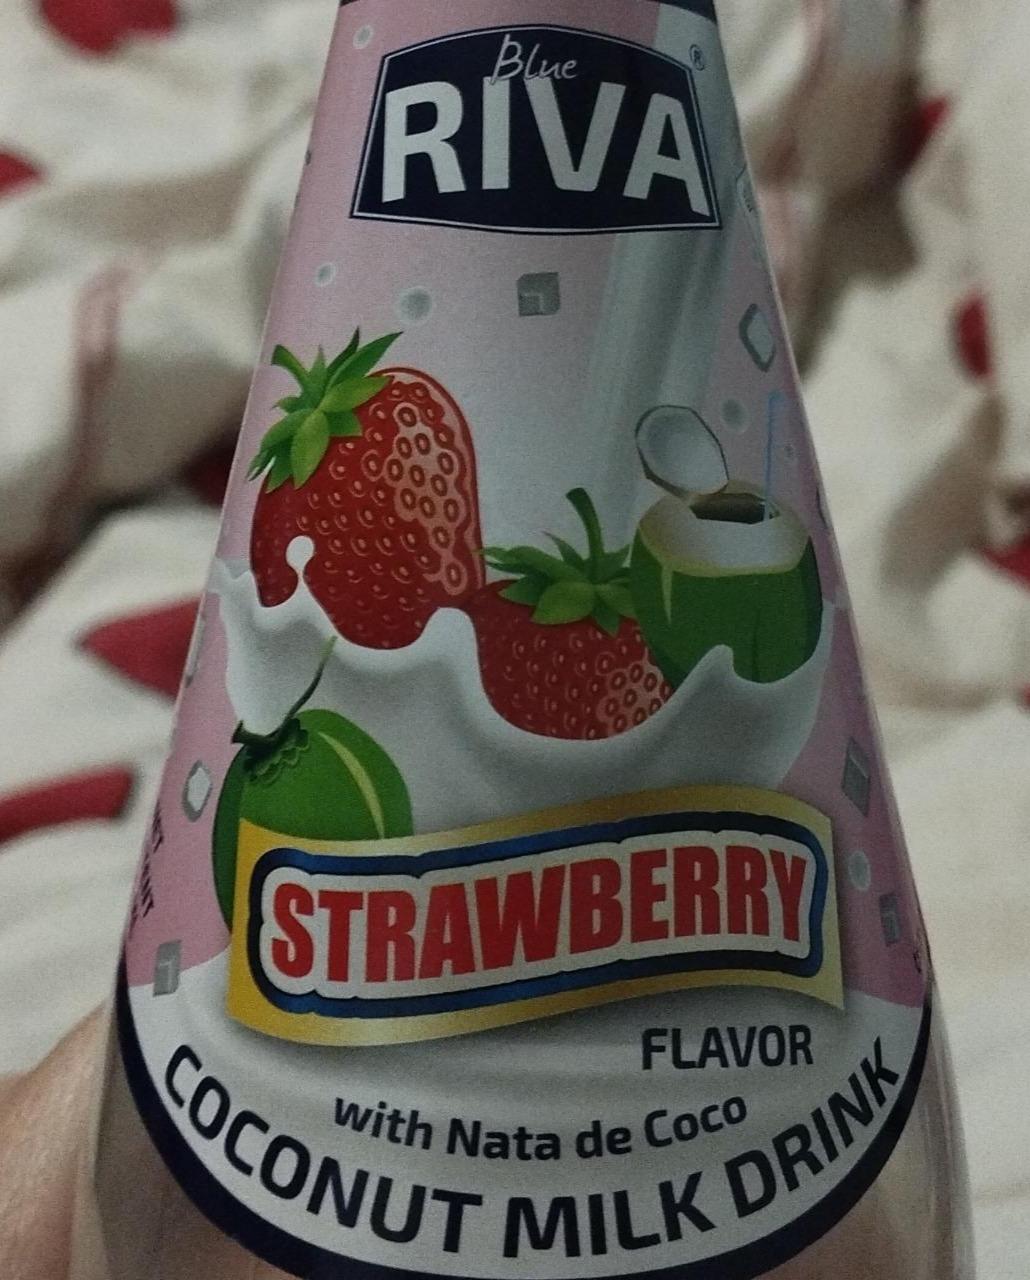 Fotografie - Strawberry with Nata de Coco Coconut milk drink Blue Riva